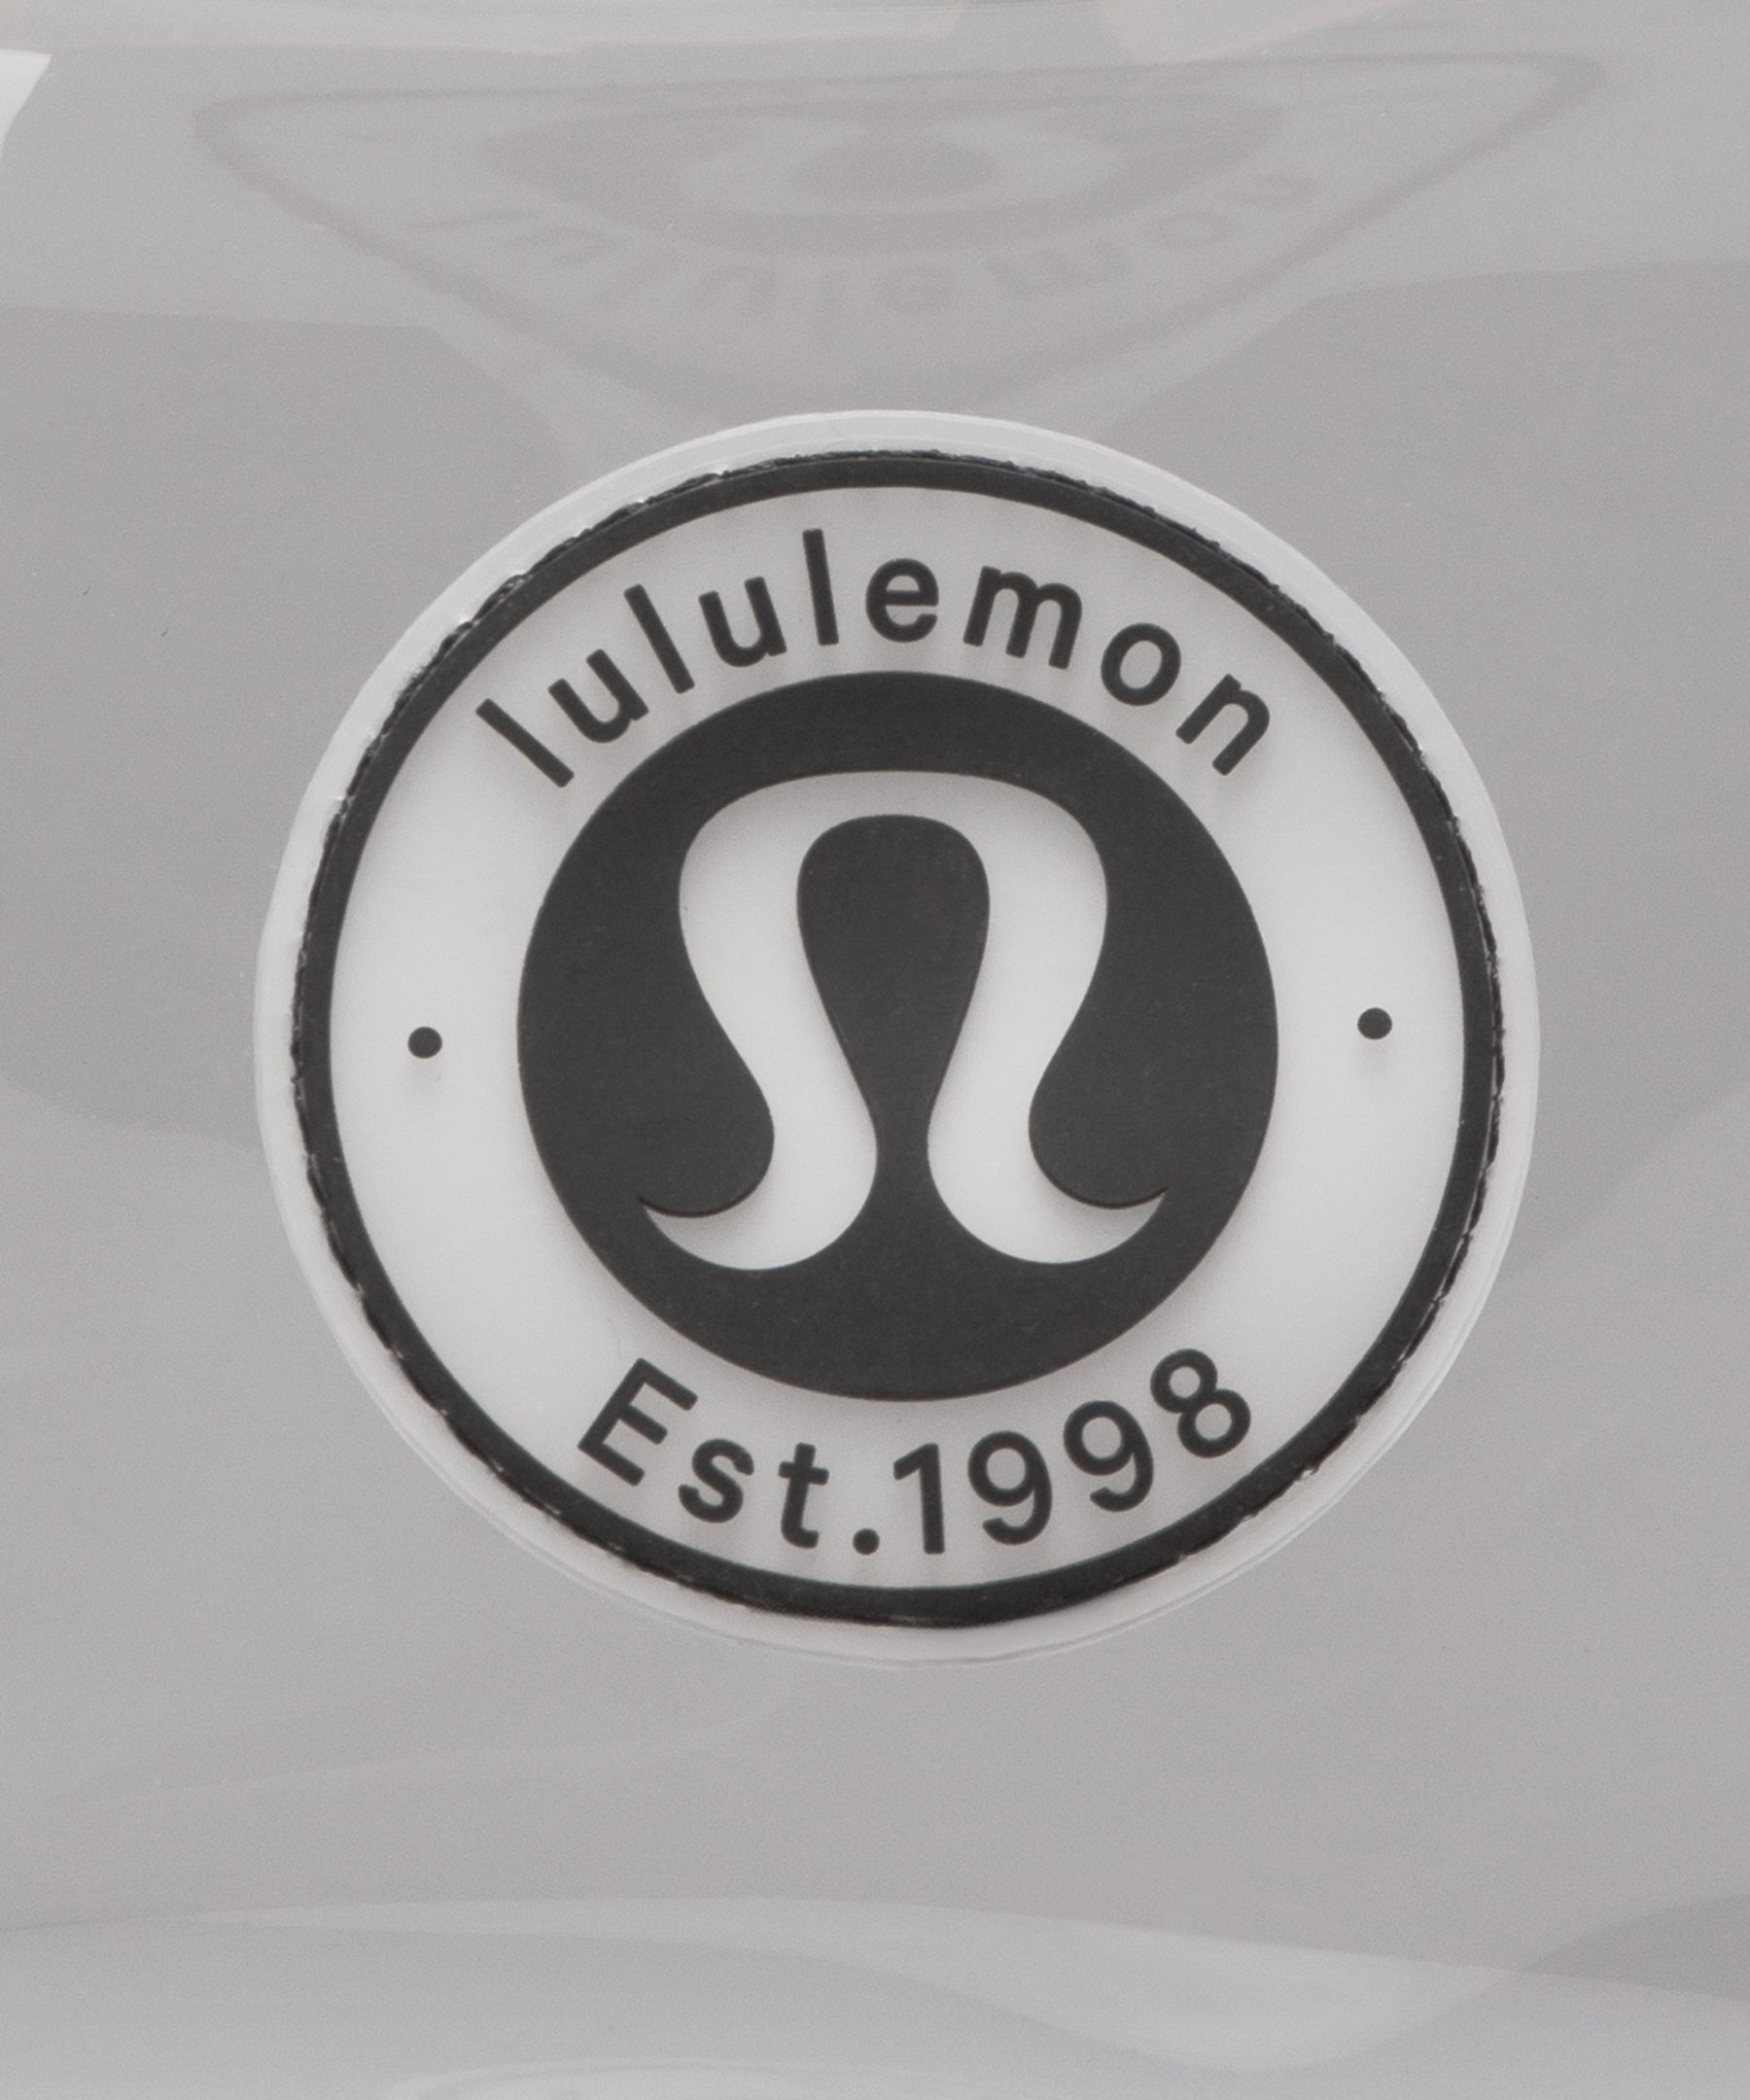 lululemon logo transparent background